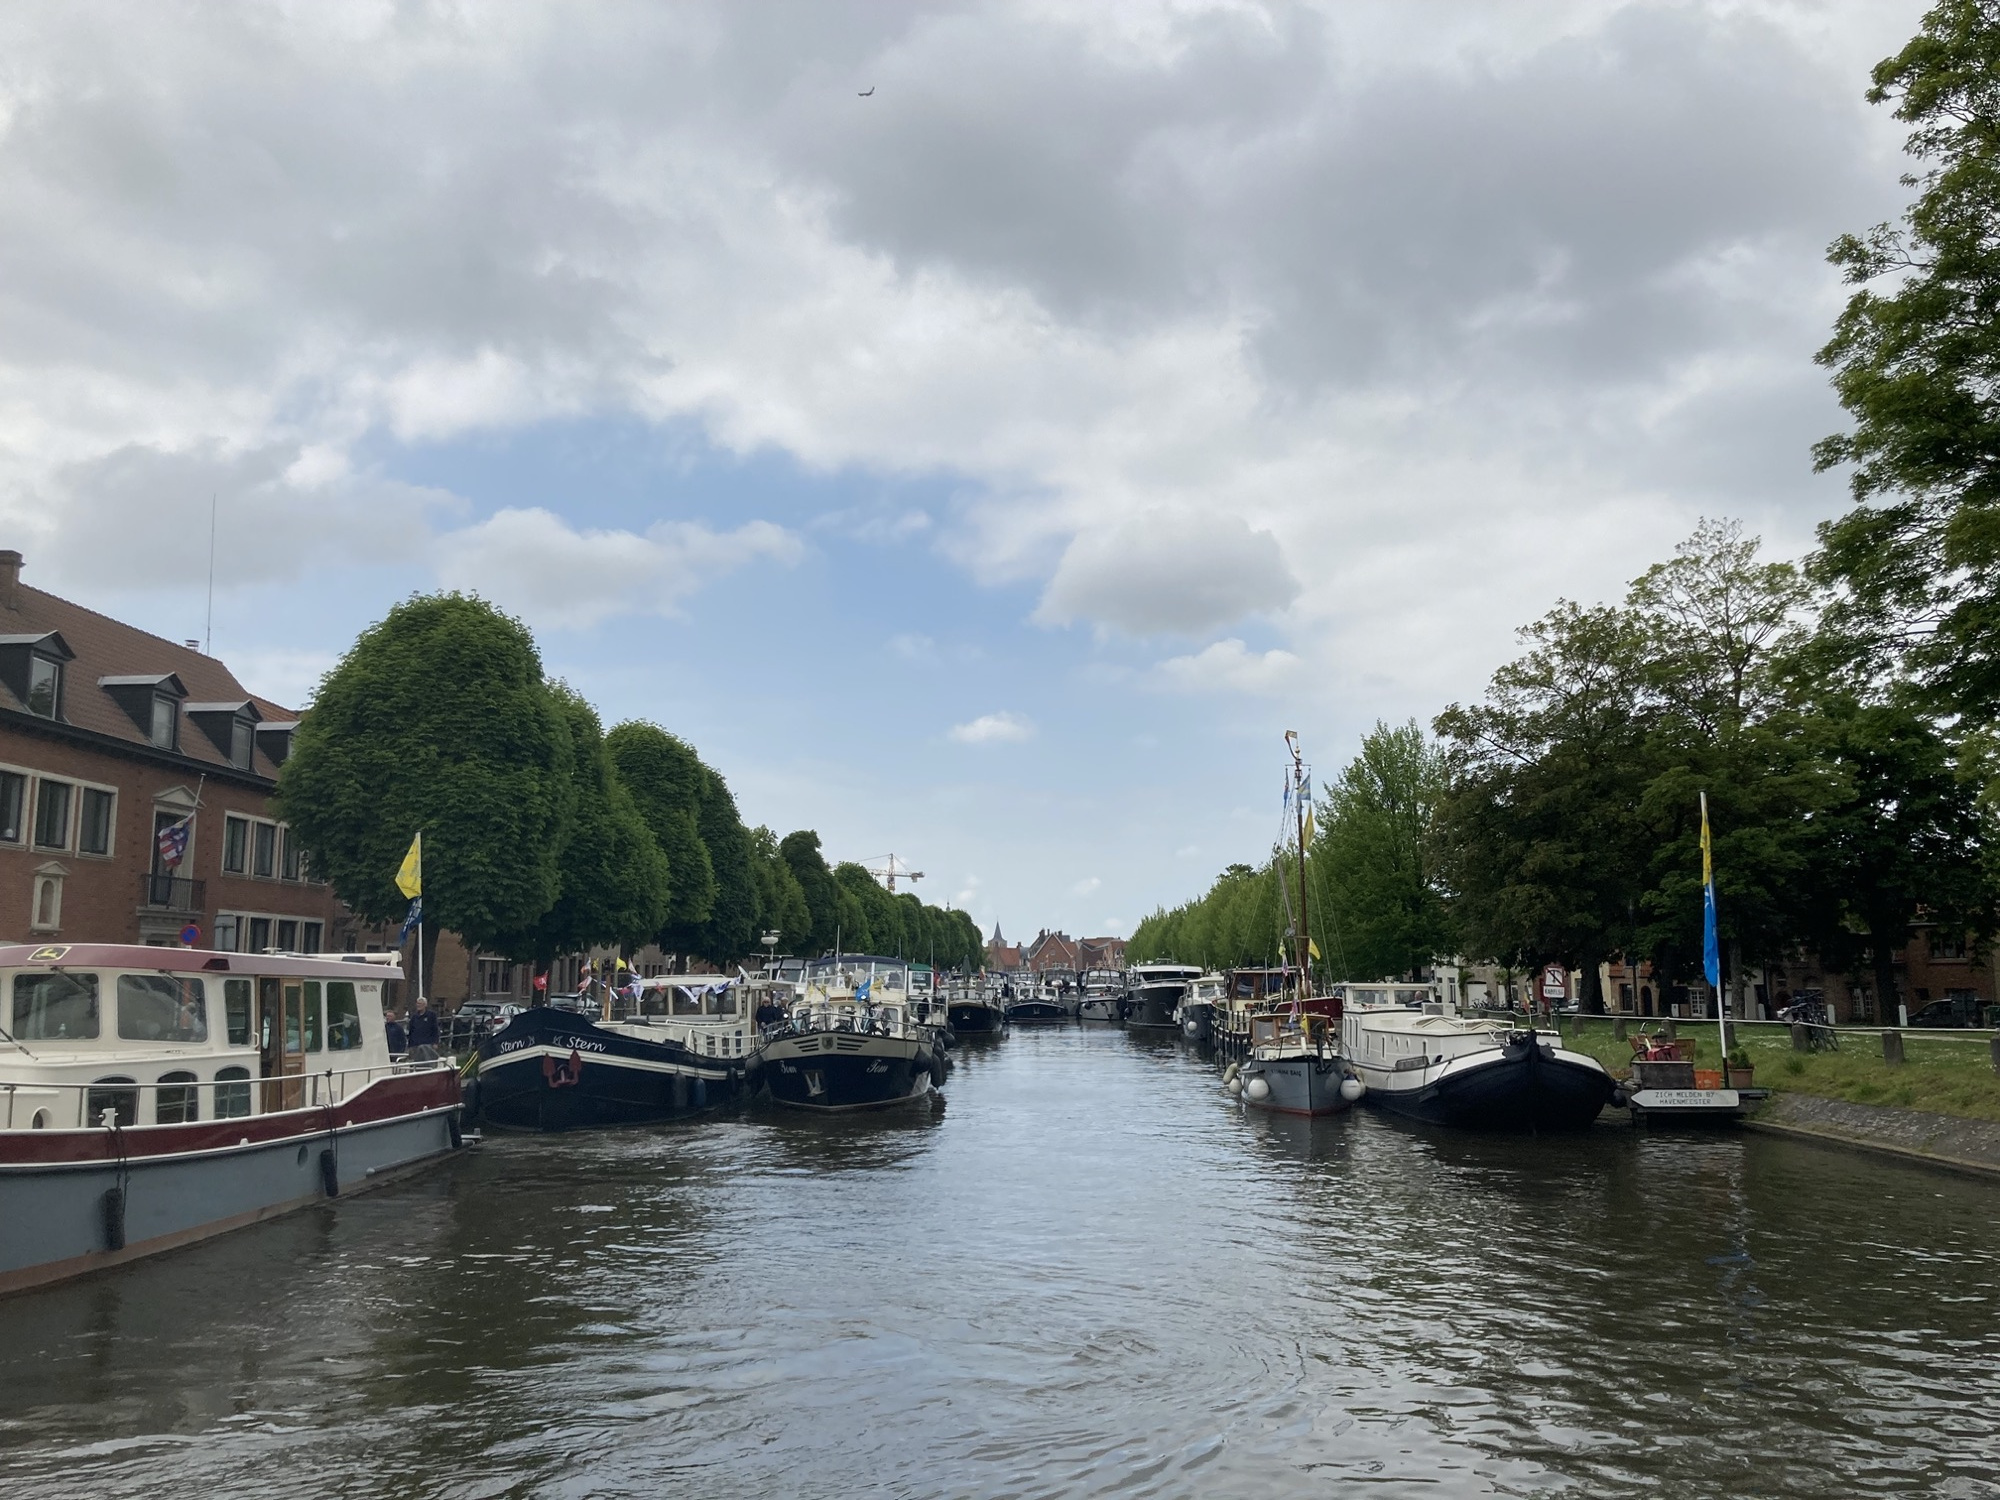 Kanal mit vielen Booten, links und rechts des Kanals liegen jeweils zwei Boote nebeneinander vor Anker, weiter hinten ist der Kanal komplett von Booten zugeparkt